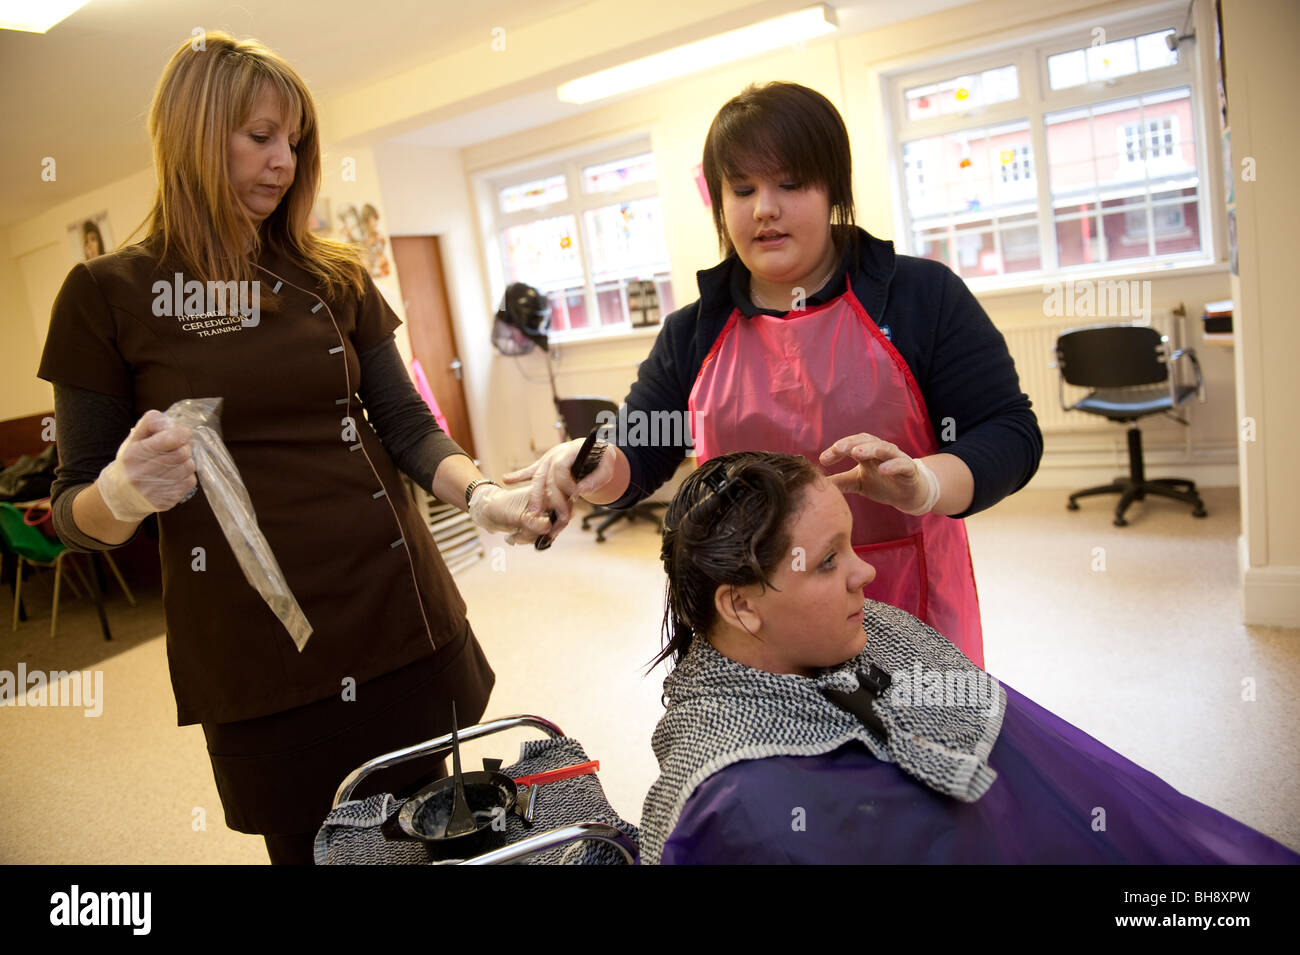 Eine Frau berufliche Tutor Lehre Friseur Fähigkeiten zu zwei Mädchen im Teenageralter in der Sekundarschule, UK Stockfoto